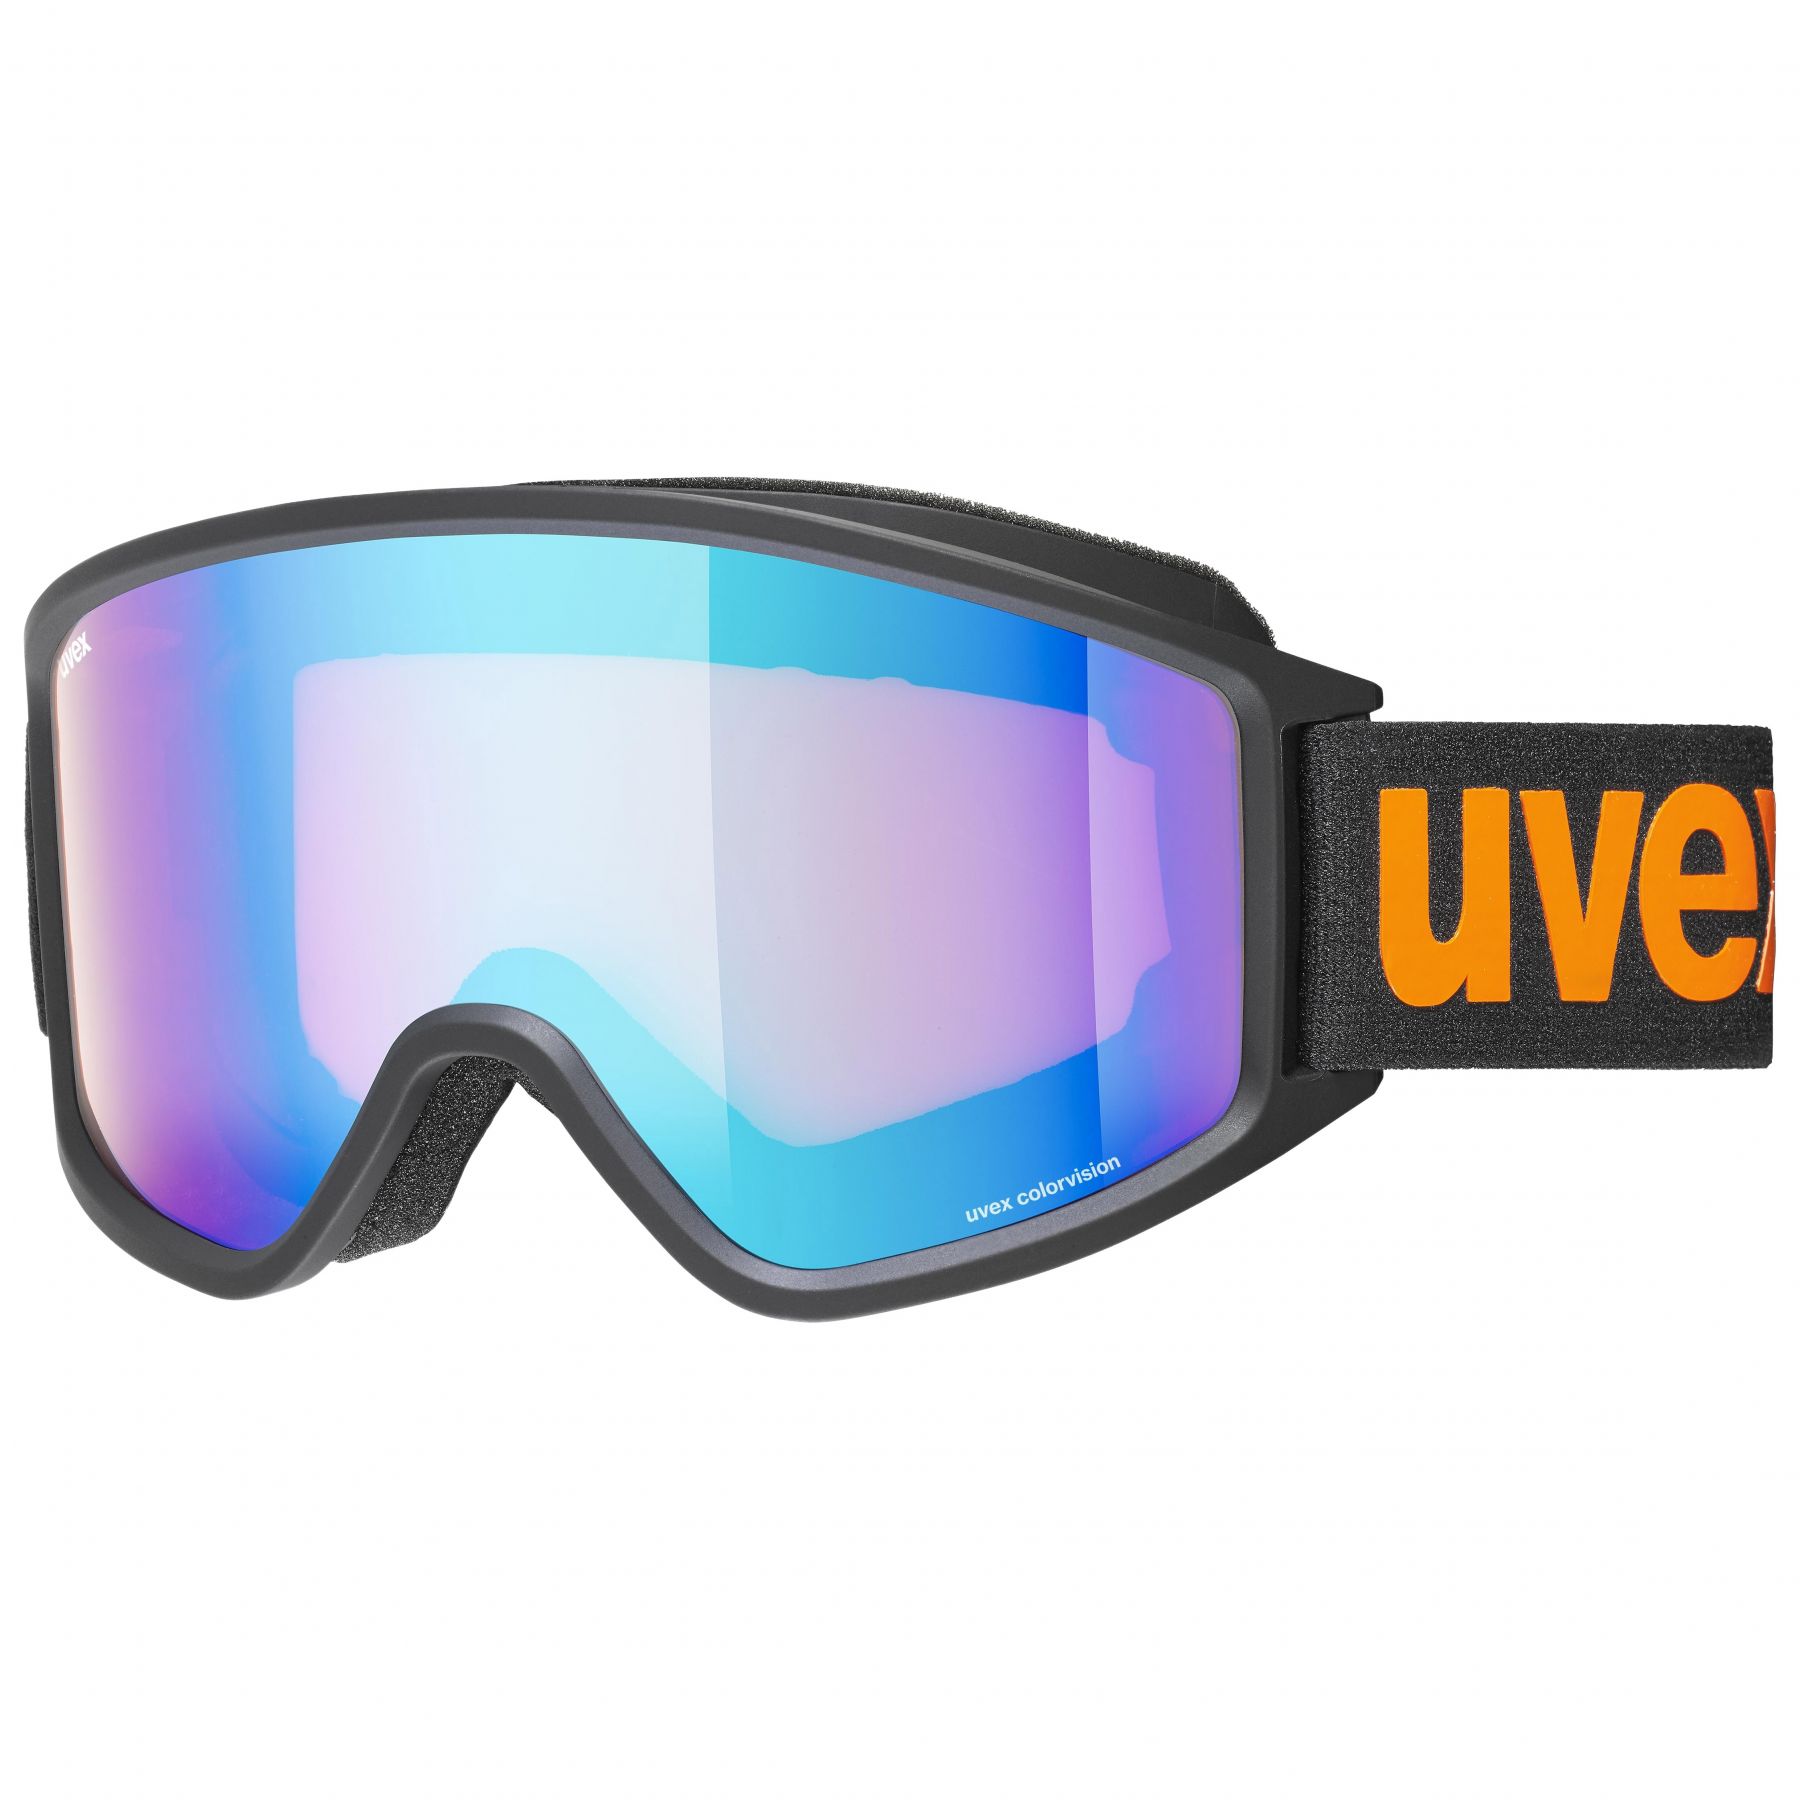 Se Uvex g.gl. 3000 CV, skibriller, sort/orange hos AktivVinter.dk